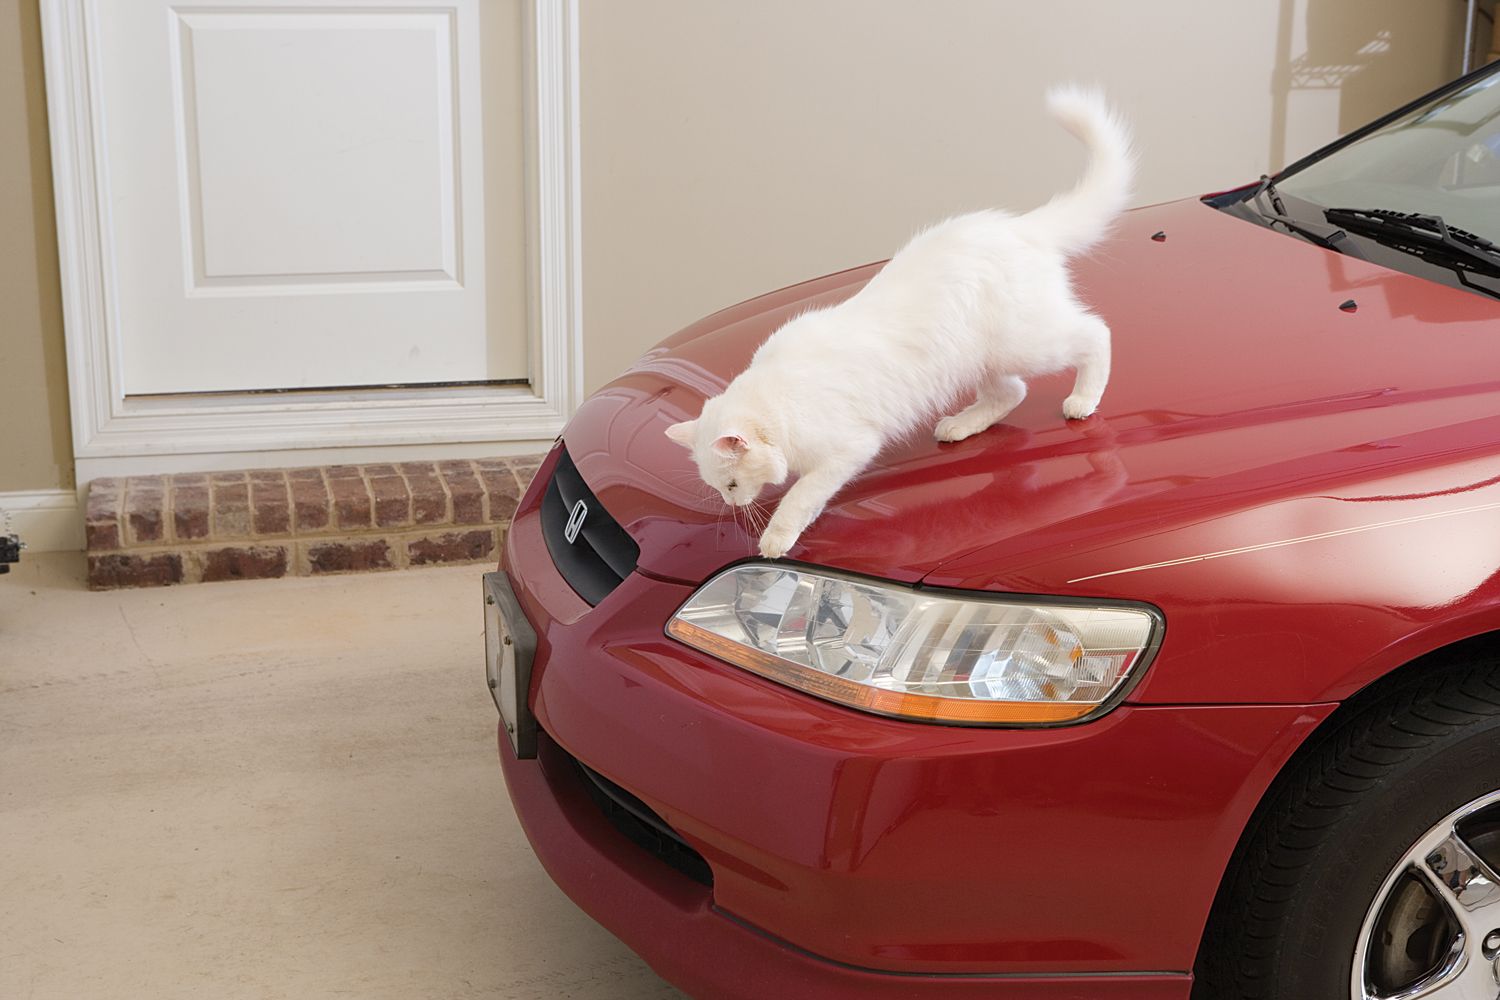 cat in car engine